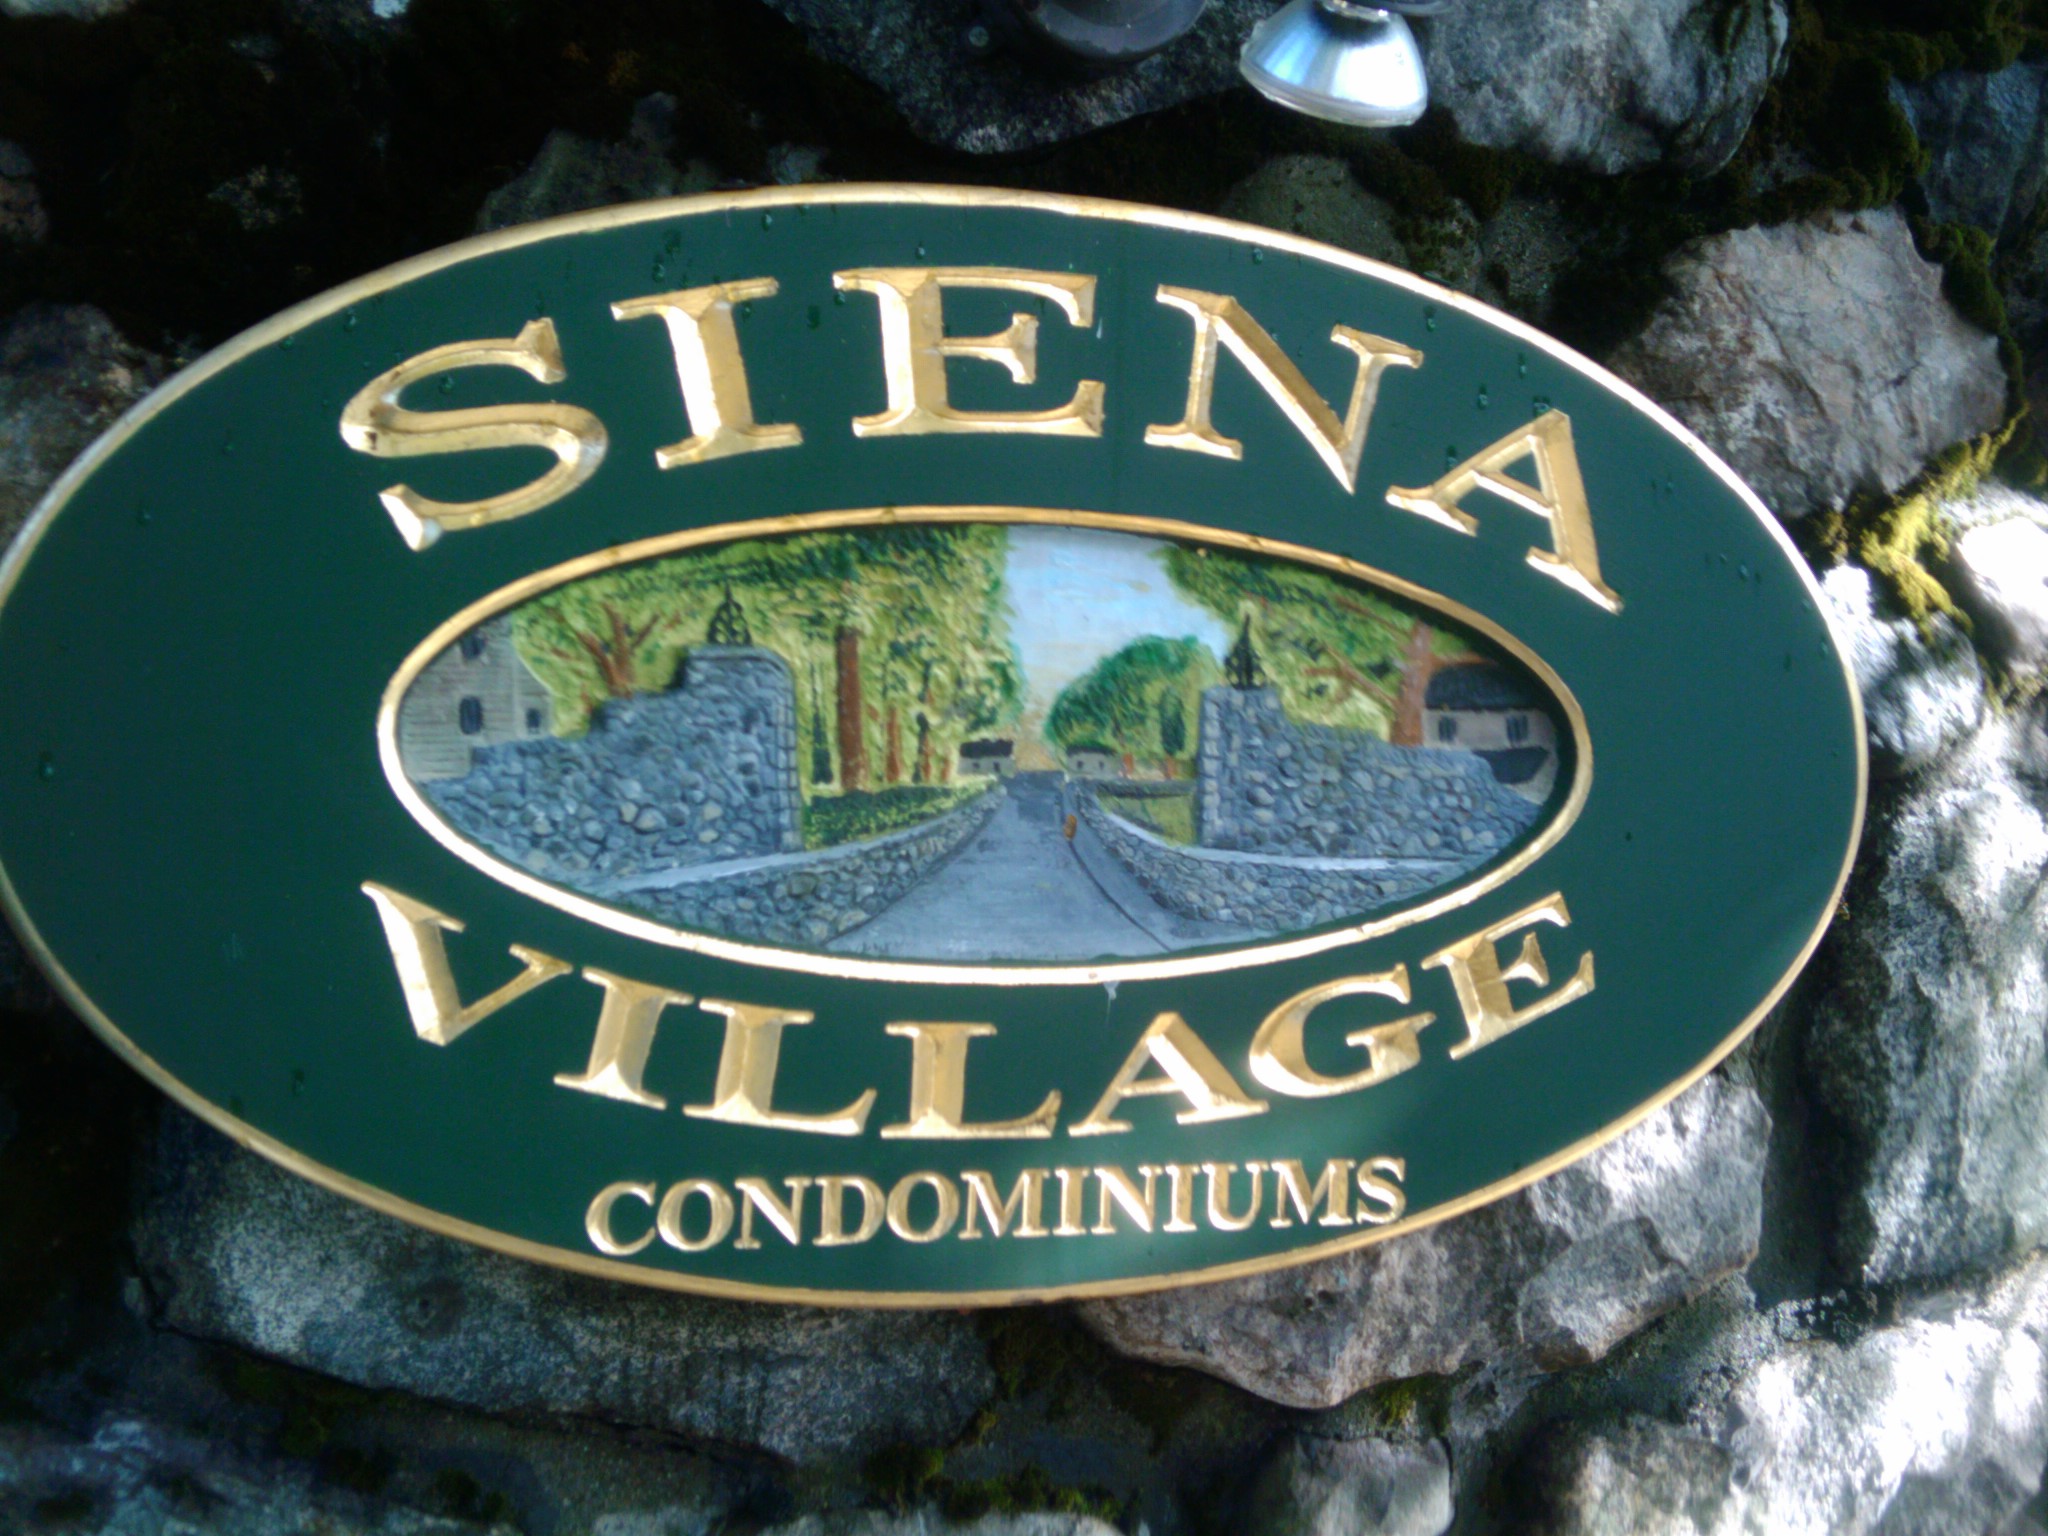 Siena Village